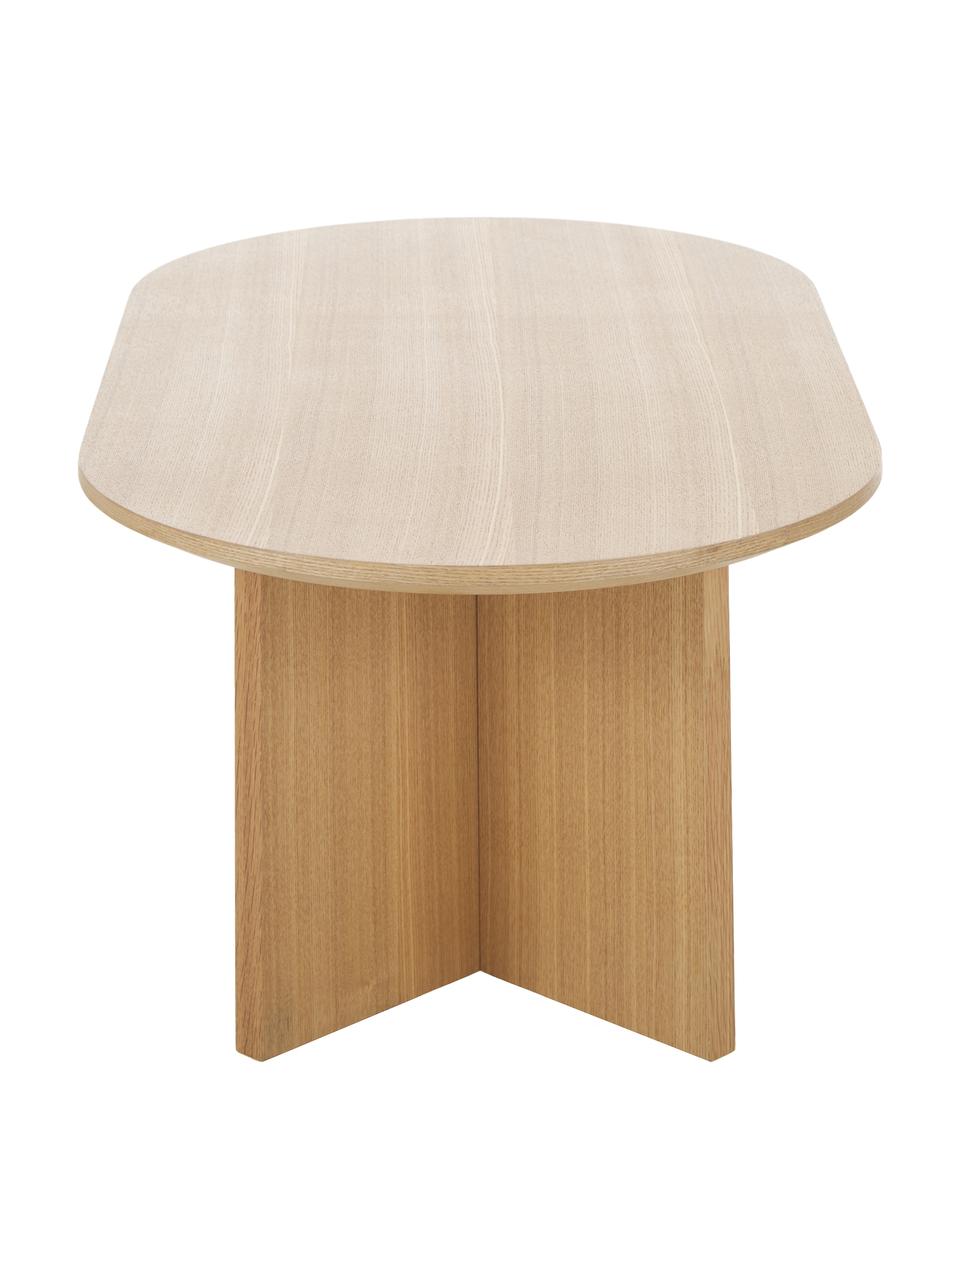 Tavolino ovale in legno Toni, Pannello di fibra a media densità (MDF) con finitura in frassino, verniciato, Legno chiaro, Larg. 100 x Alt. 35 cm